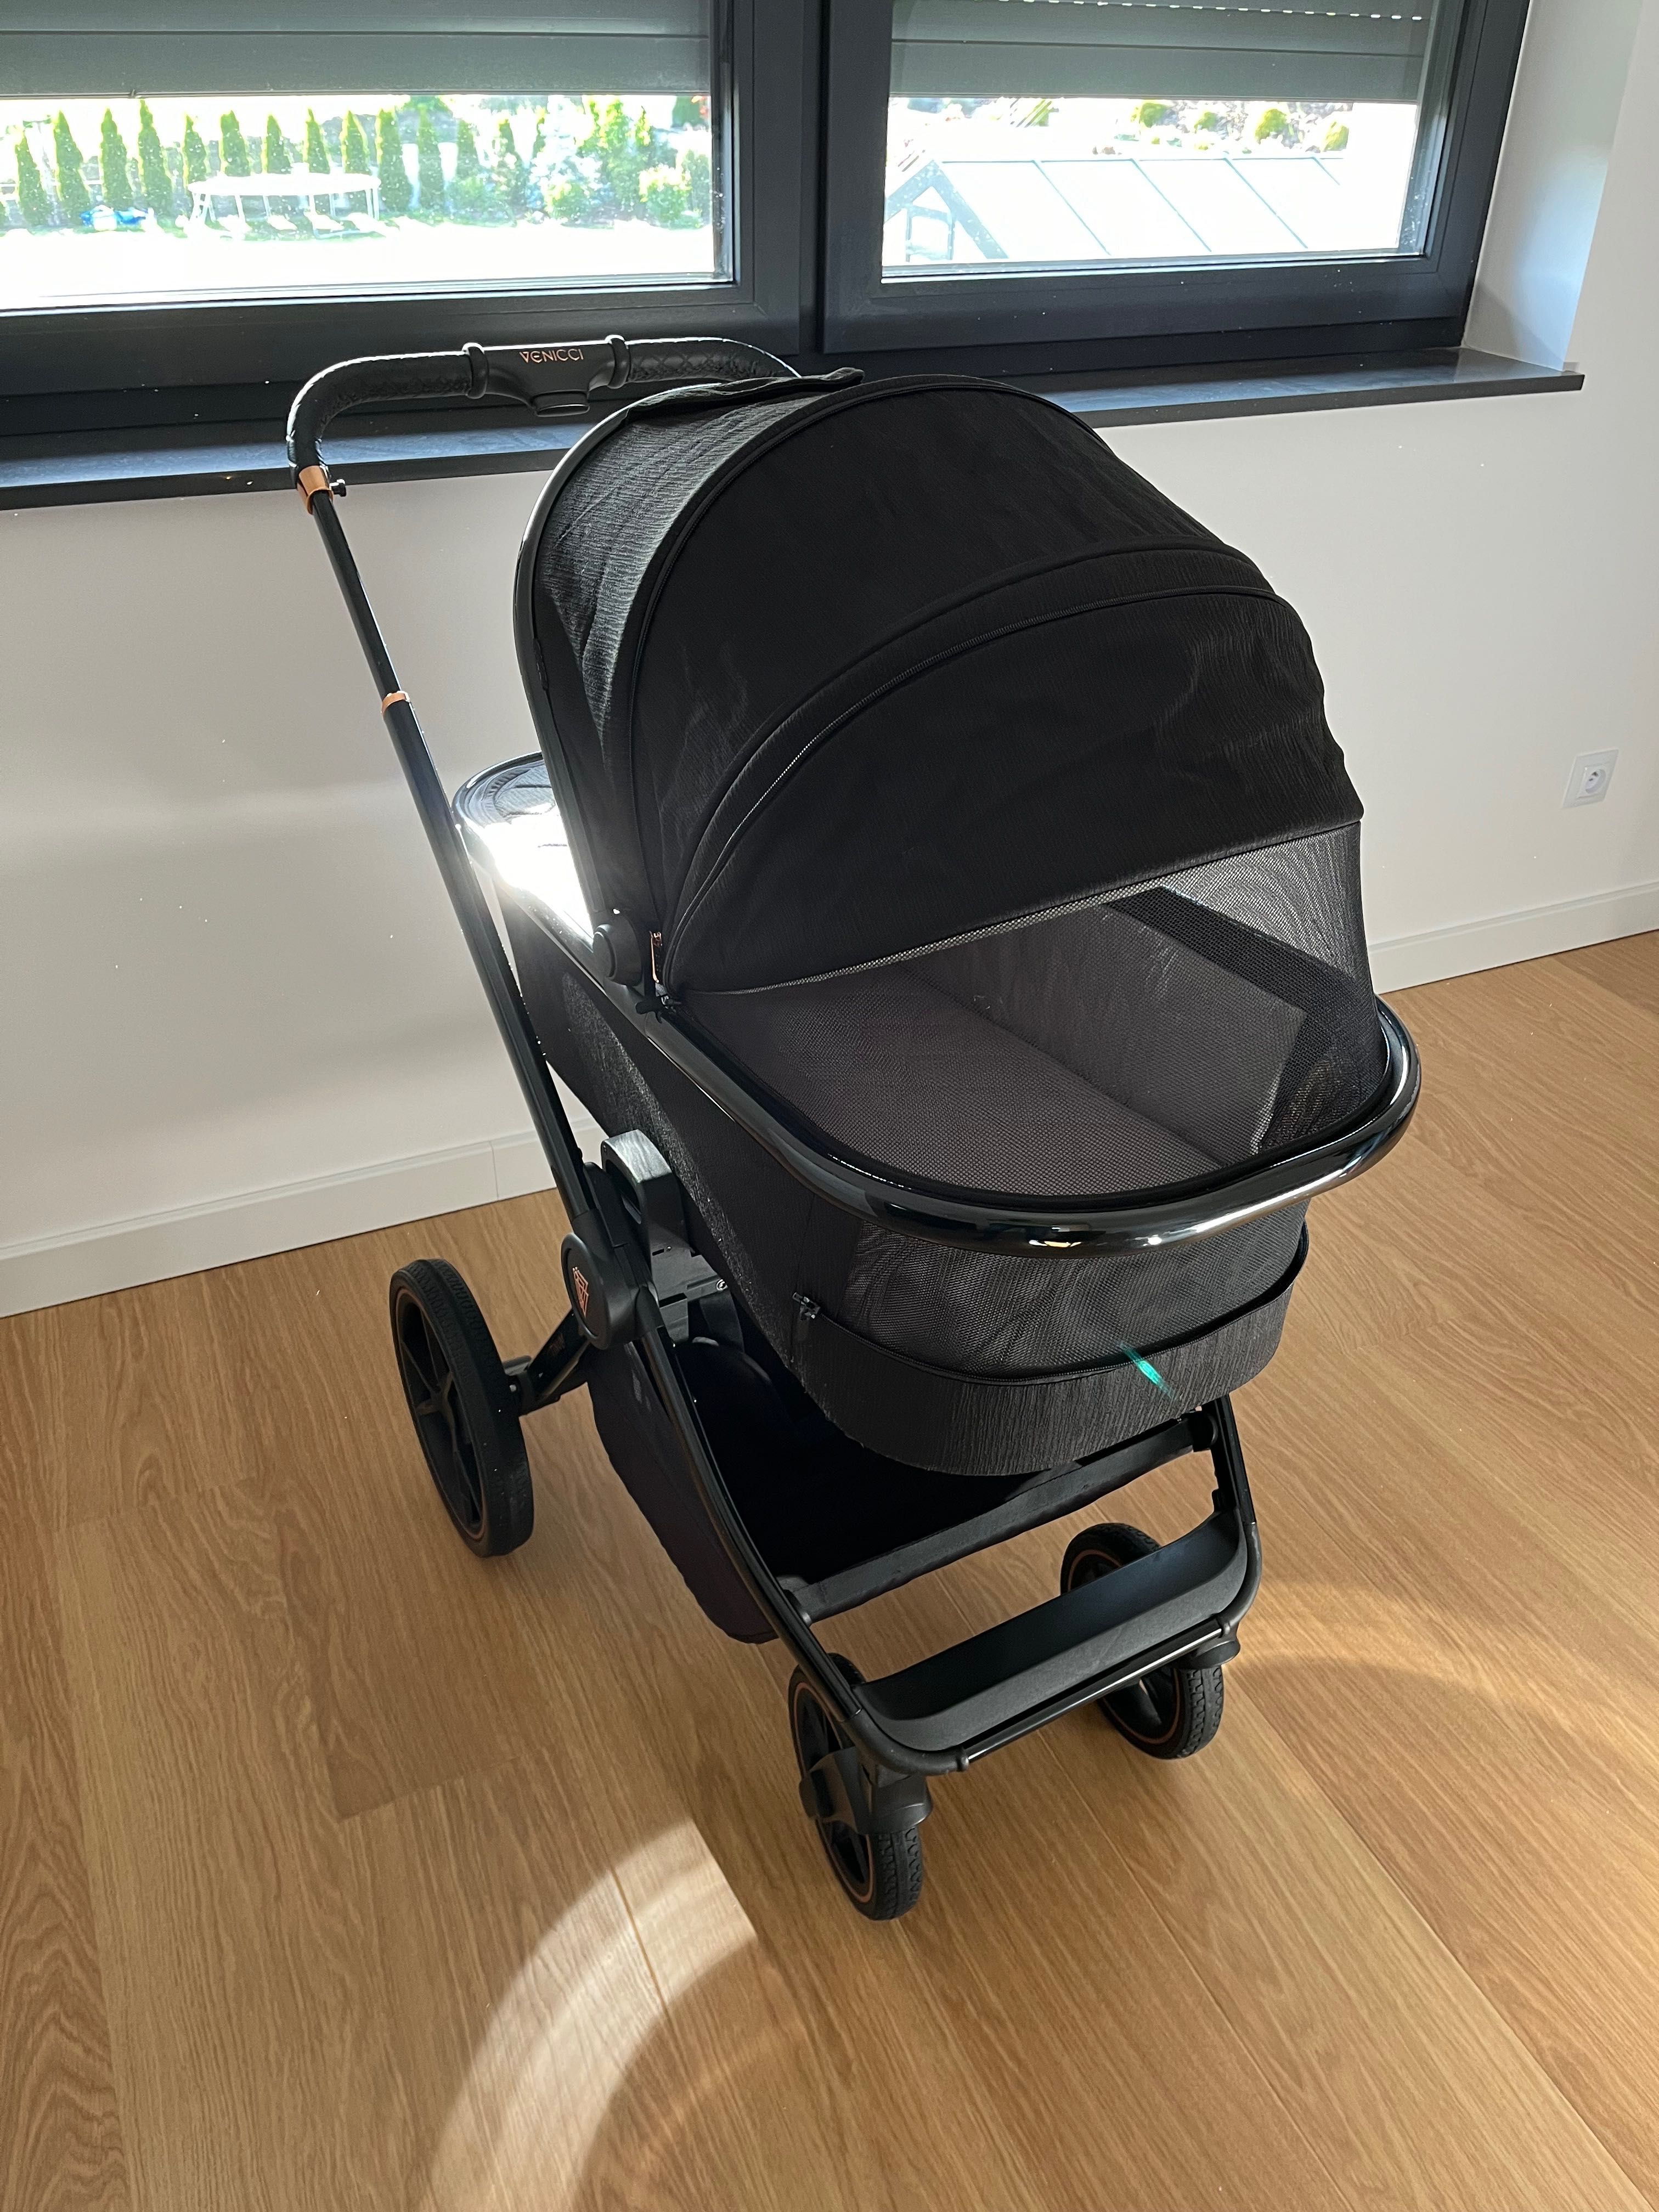 Wózek dla dziecka Venicci Tinum SE wielofunkcyjny 3w1 Stan idealny!